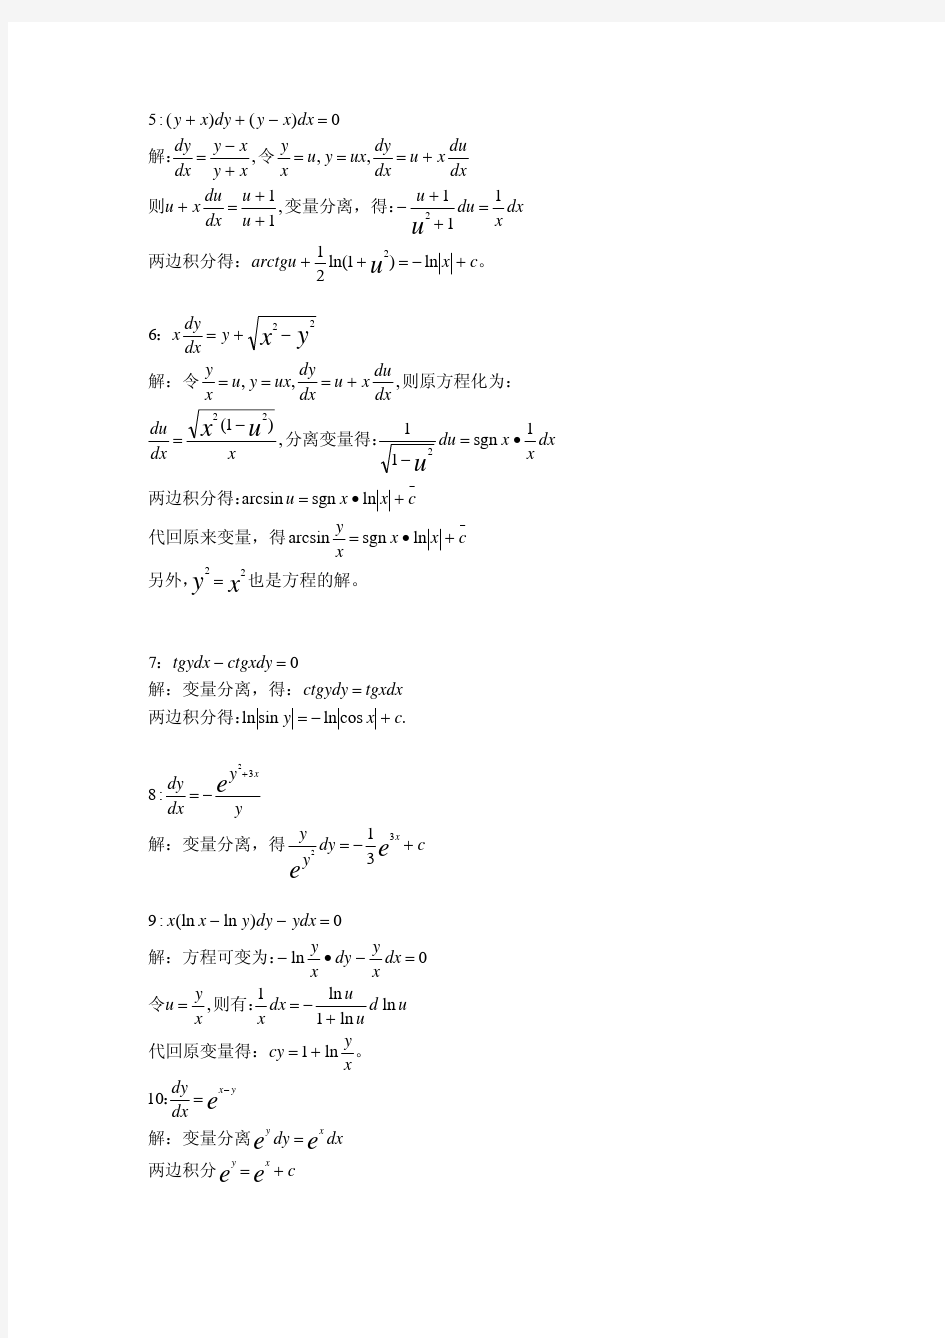 王高雄等《常微分方程》第三版习题解答详细